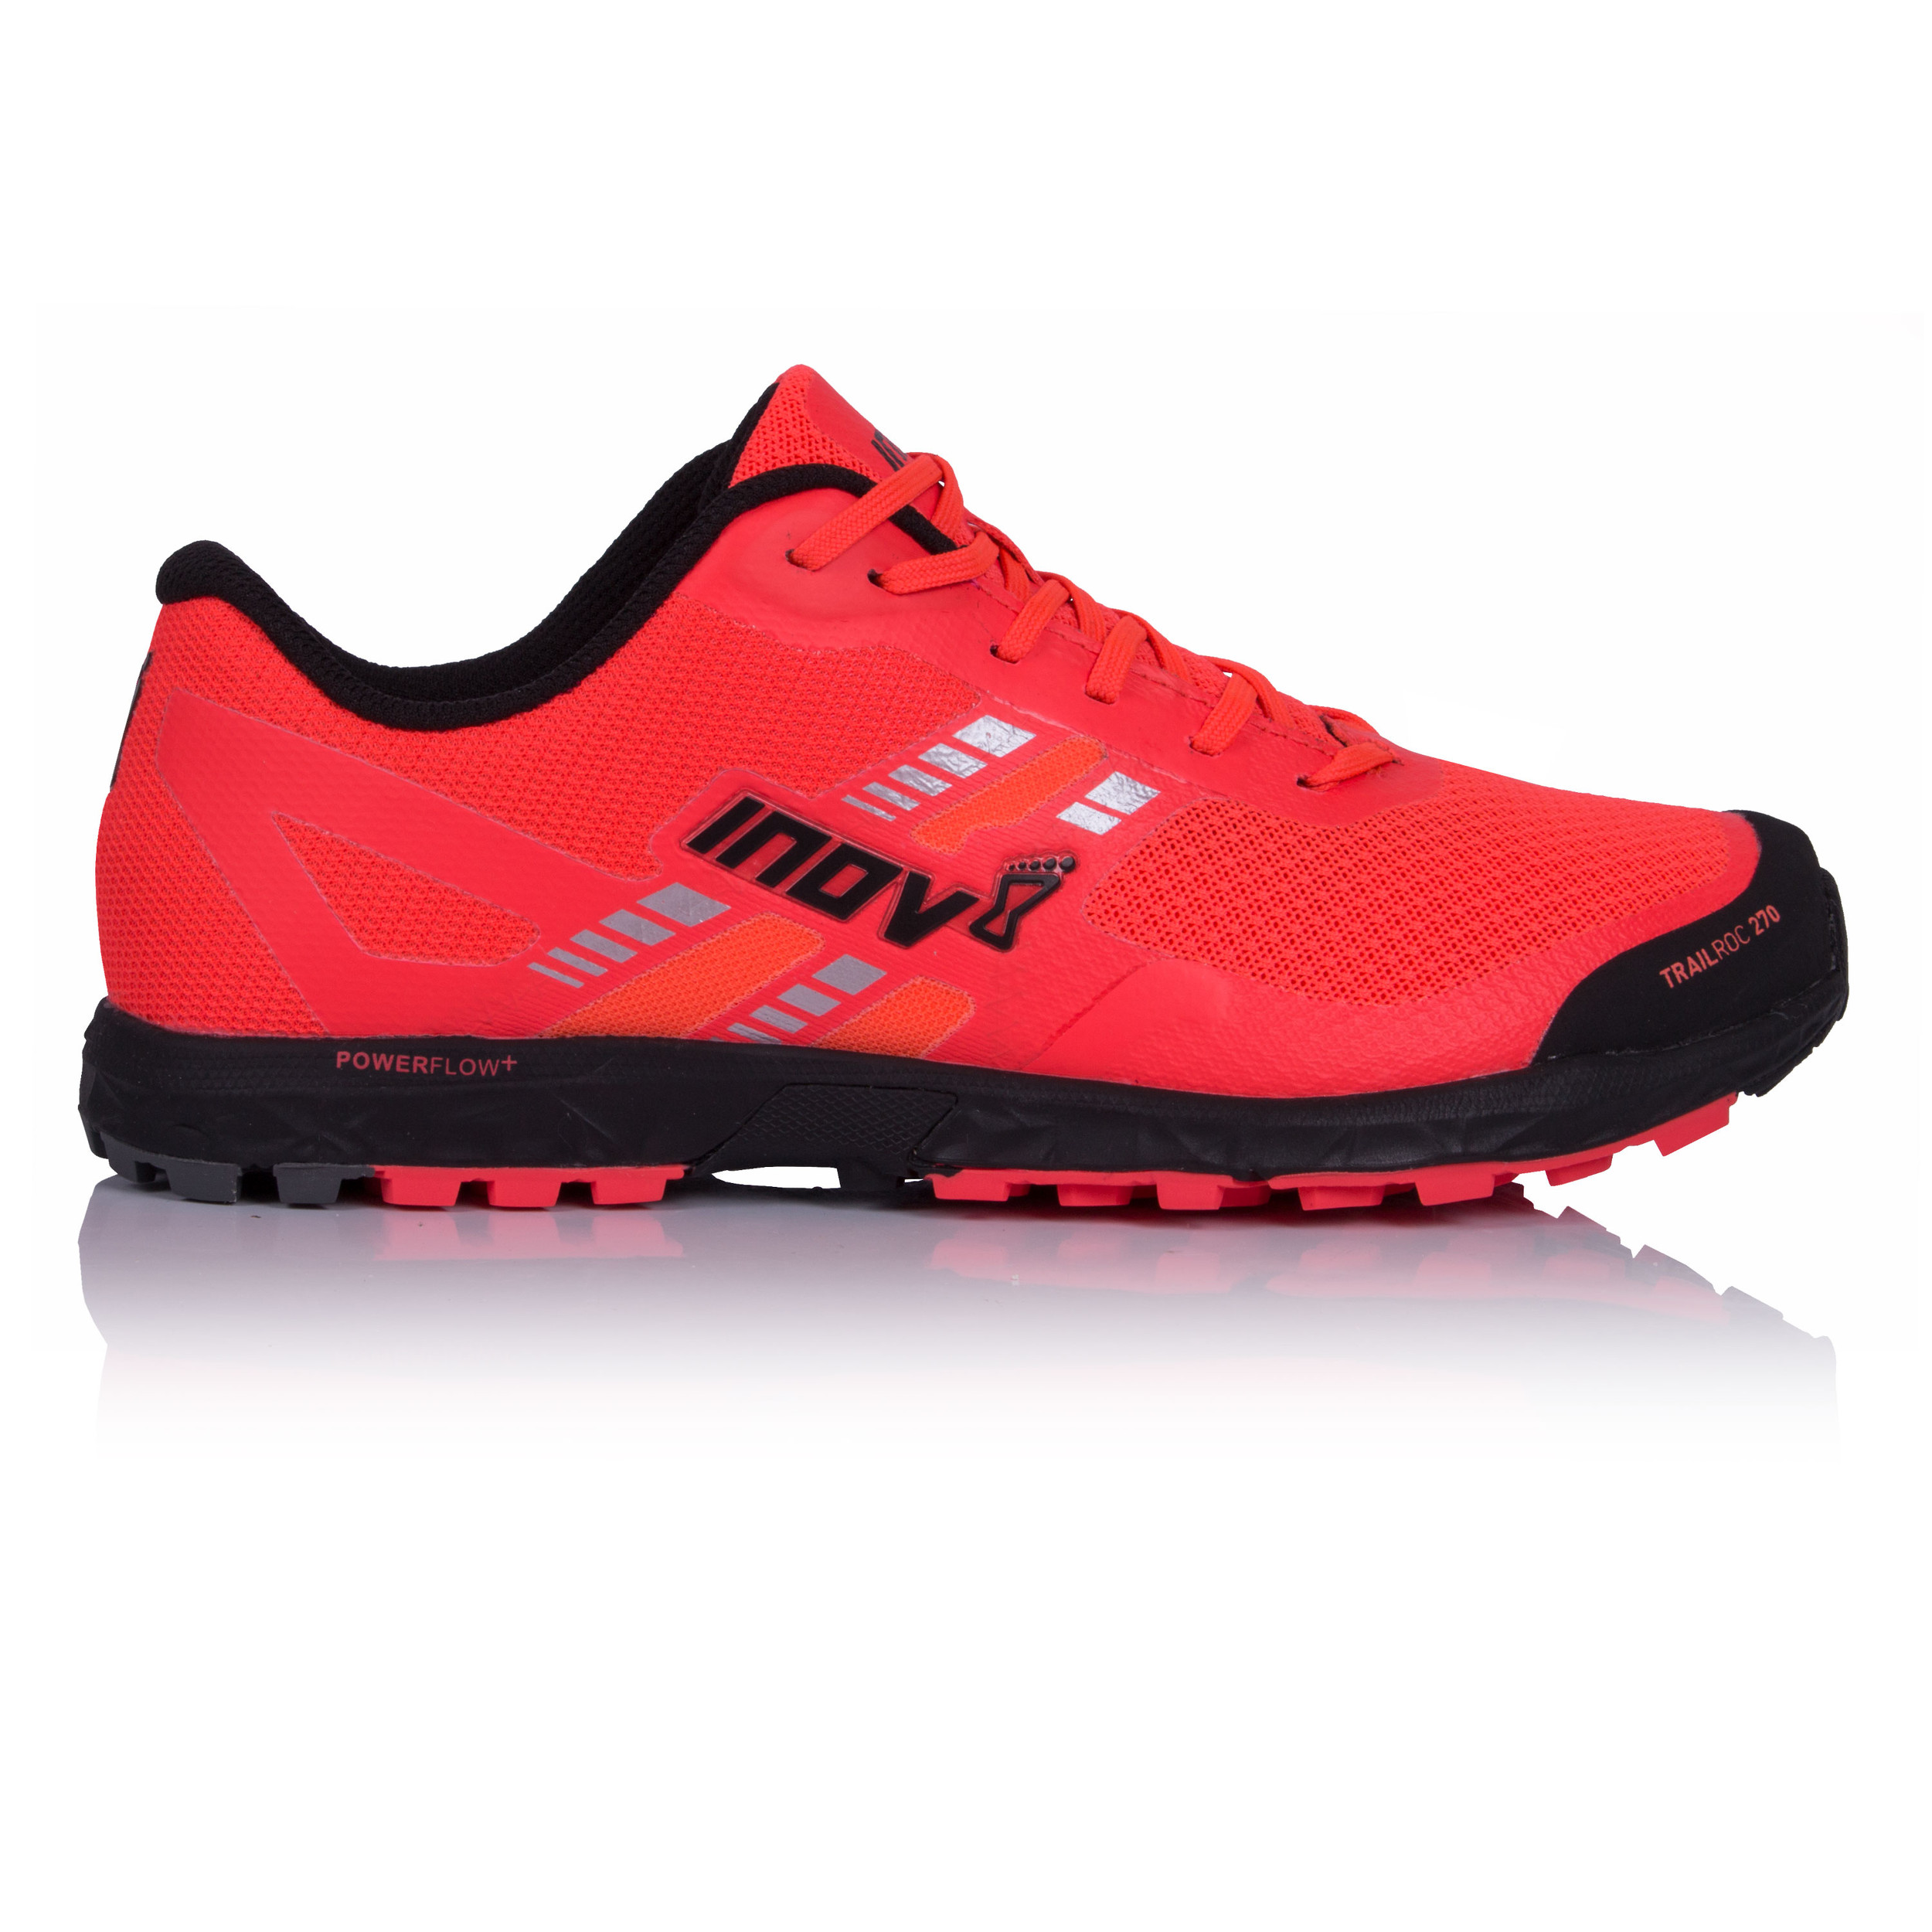 Inov8 Trailroc 270 femmes chaussures de running